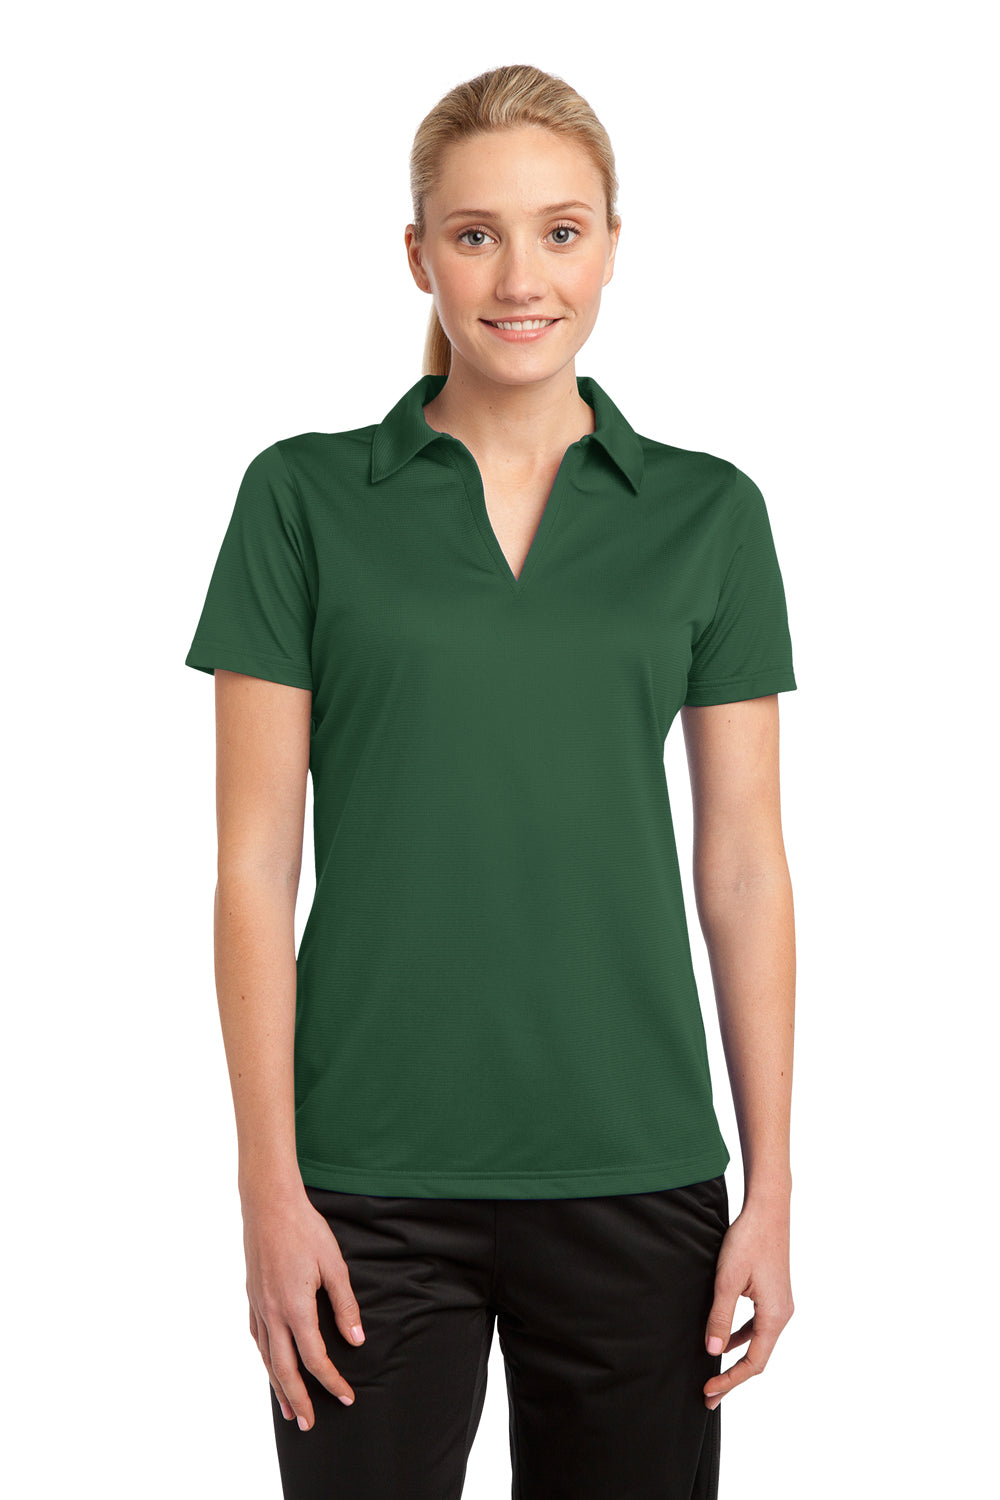 Sport-Tek LST690 Womens Active Mesh Moisture Wicking Short Sleeve Polo Shirt Forest Green Front